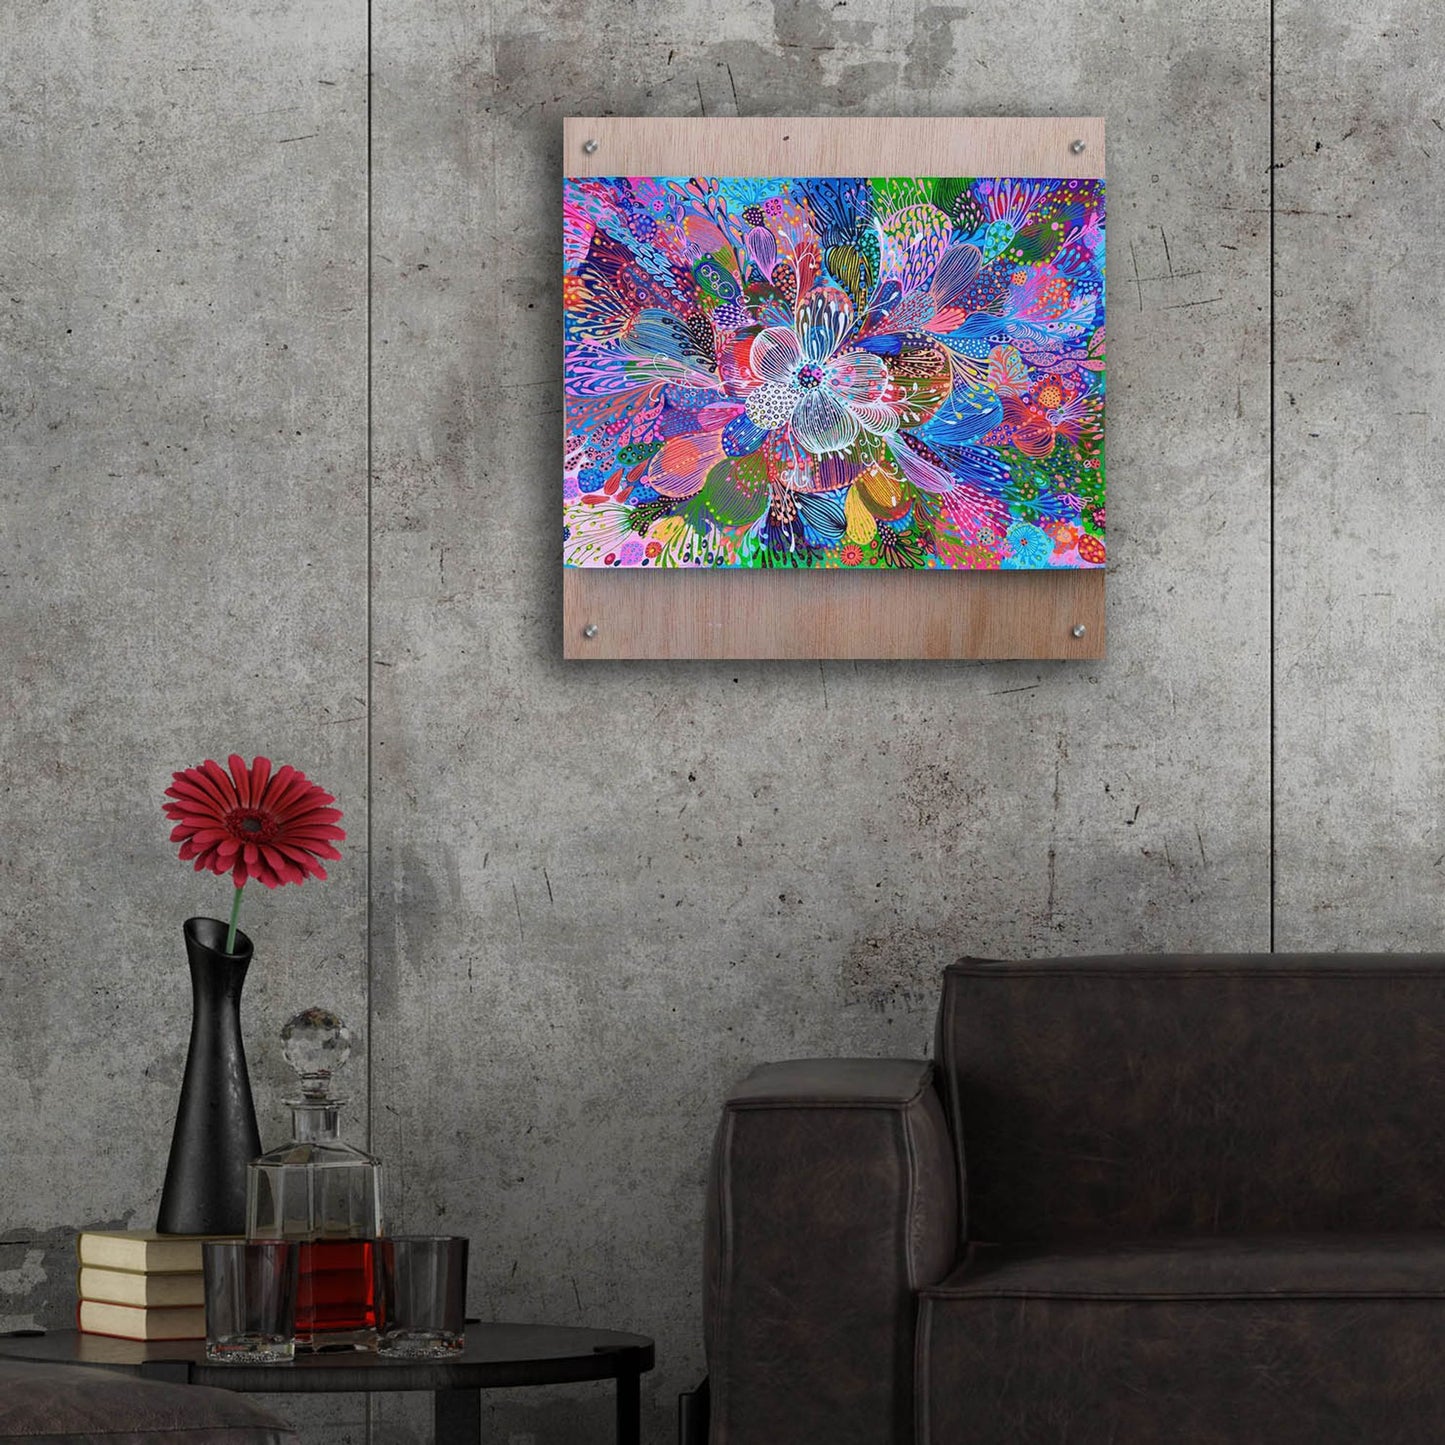 Epic Art 'Blooming2 by Noemi Ibarz, Acrylic Glass Wall Art,24x24